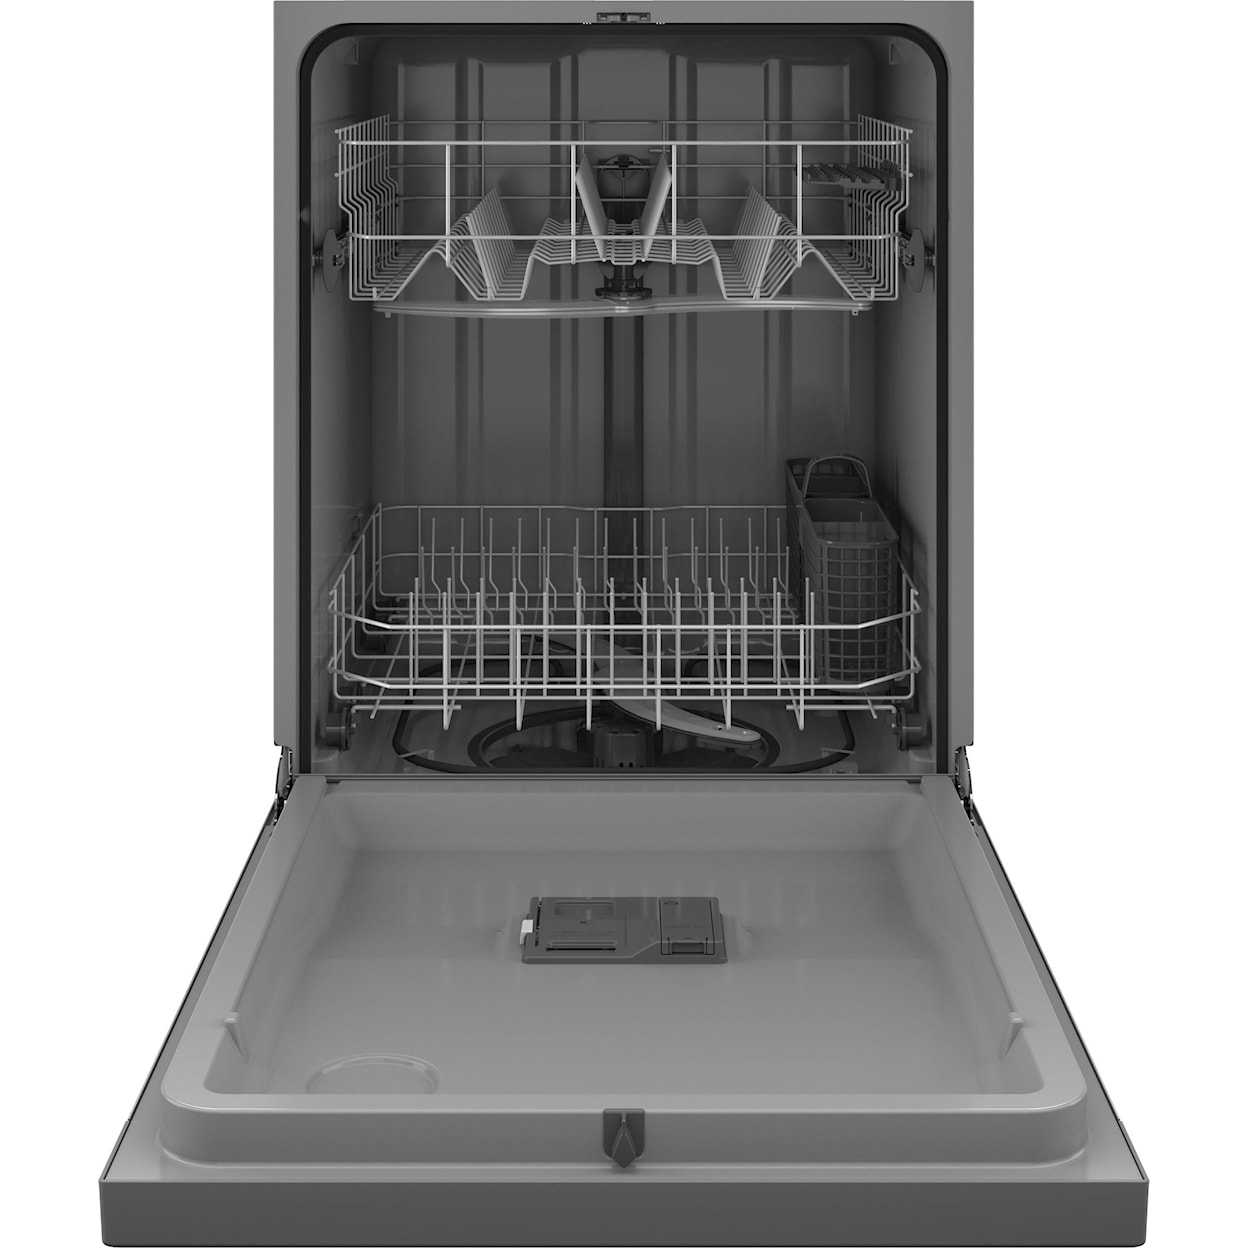 GE Appliances Dishwashers Dishwasher